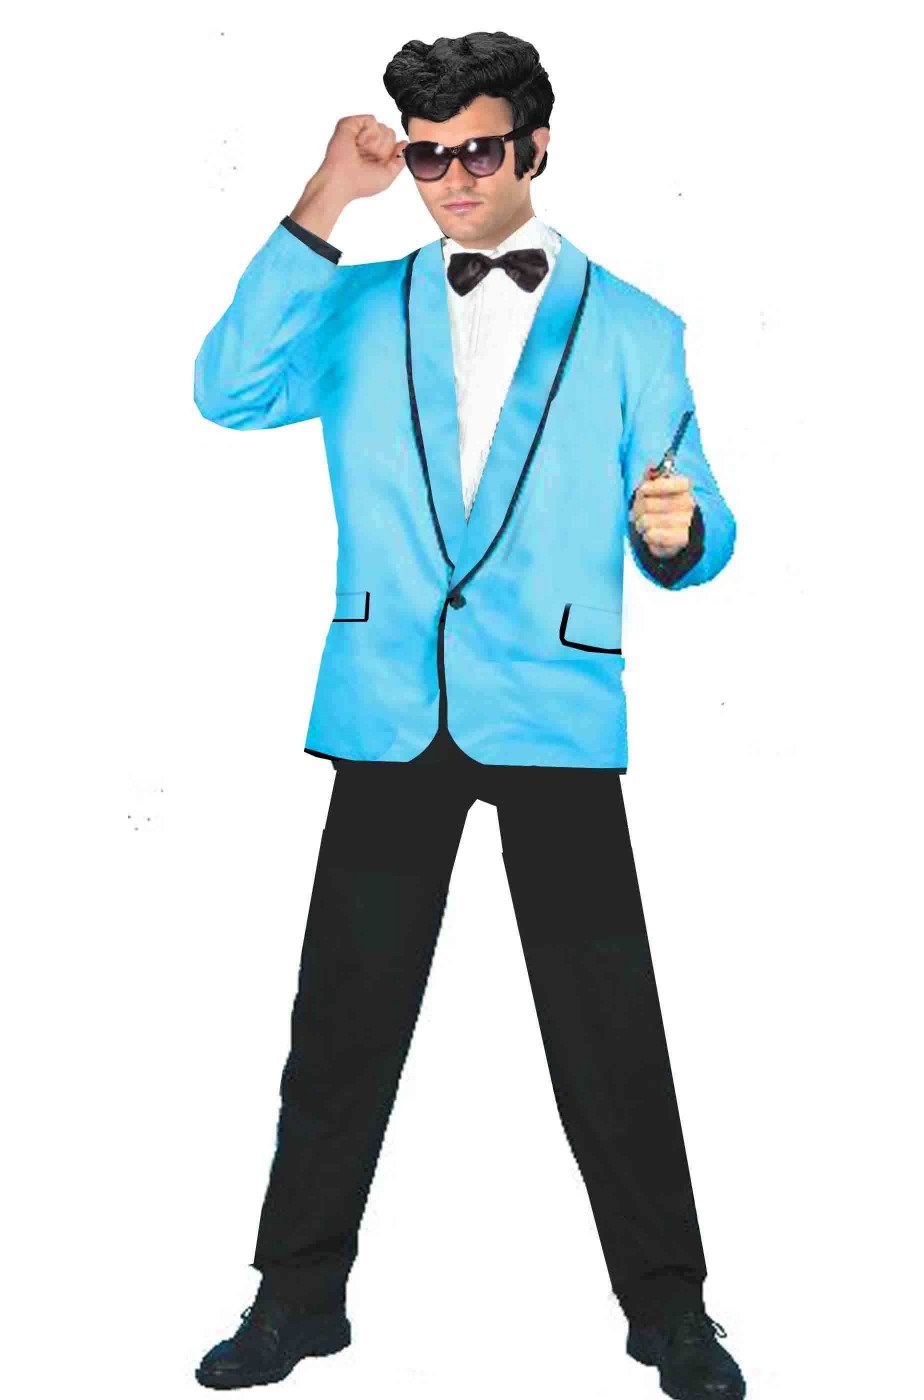 Giacca azzurra uomo con bordi neri anni 50 stile grease